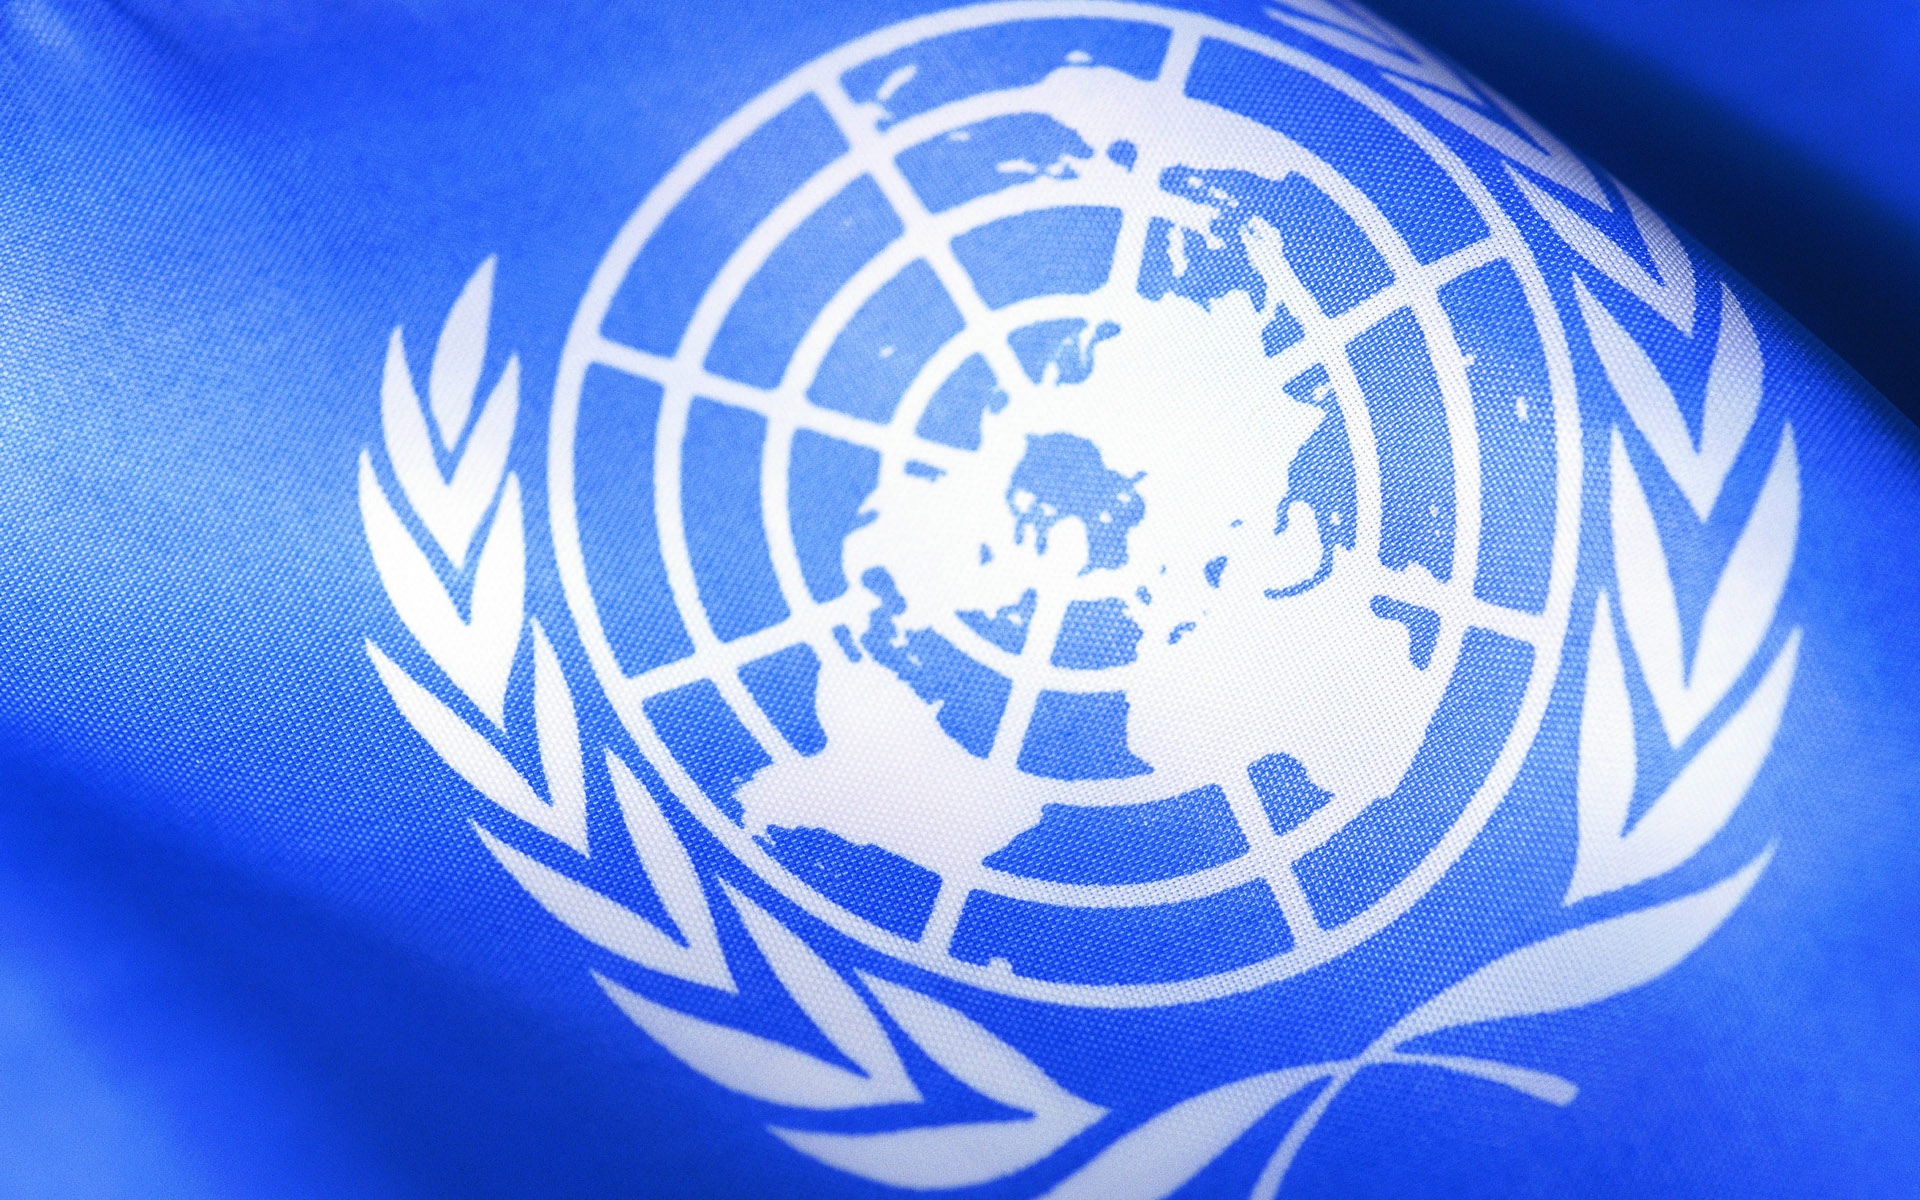 ООН подсчитала количество погибших мирных жителей Донбасса